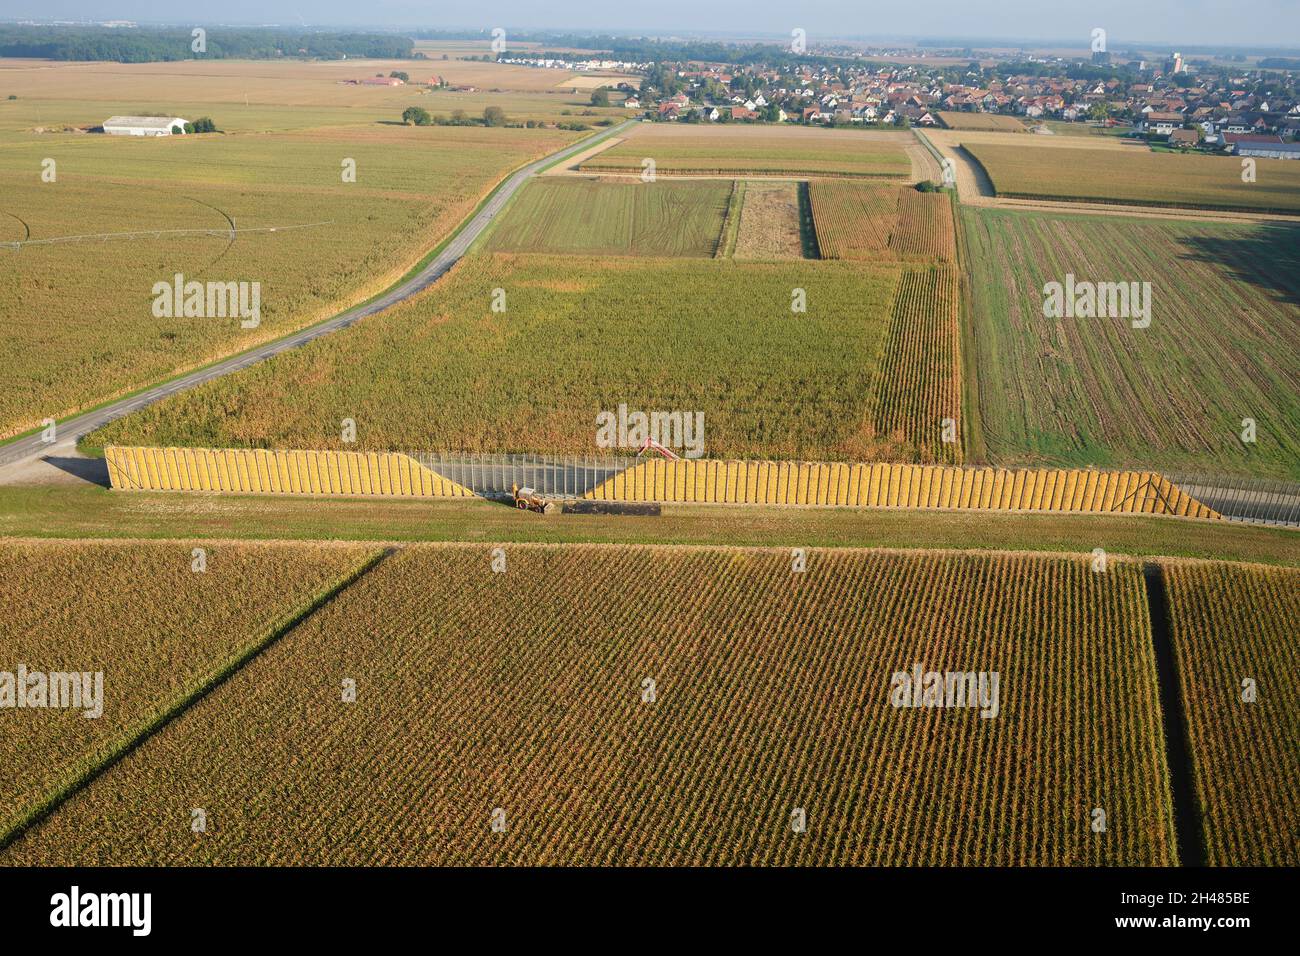 LUFTAUFNAHME. Maisähren, die in einer sehr langen Krippe gestapelt werden, um natürlich zu trocknen. Sundhoffen, Alsace, Grand Est, Frankreich. Stockfoto